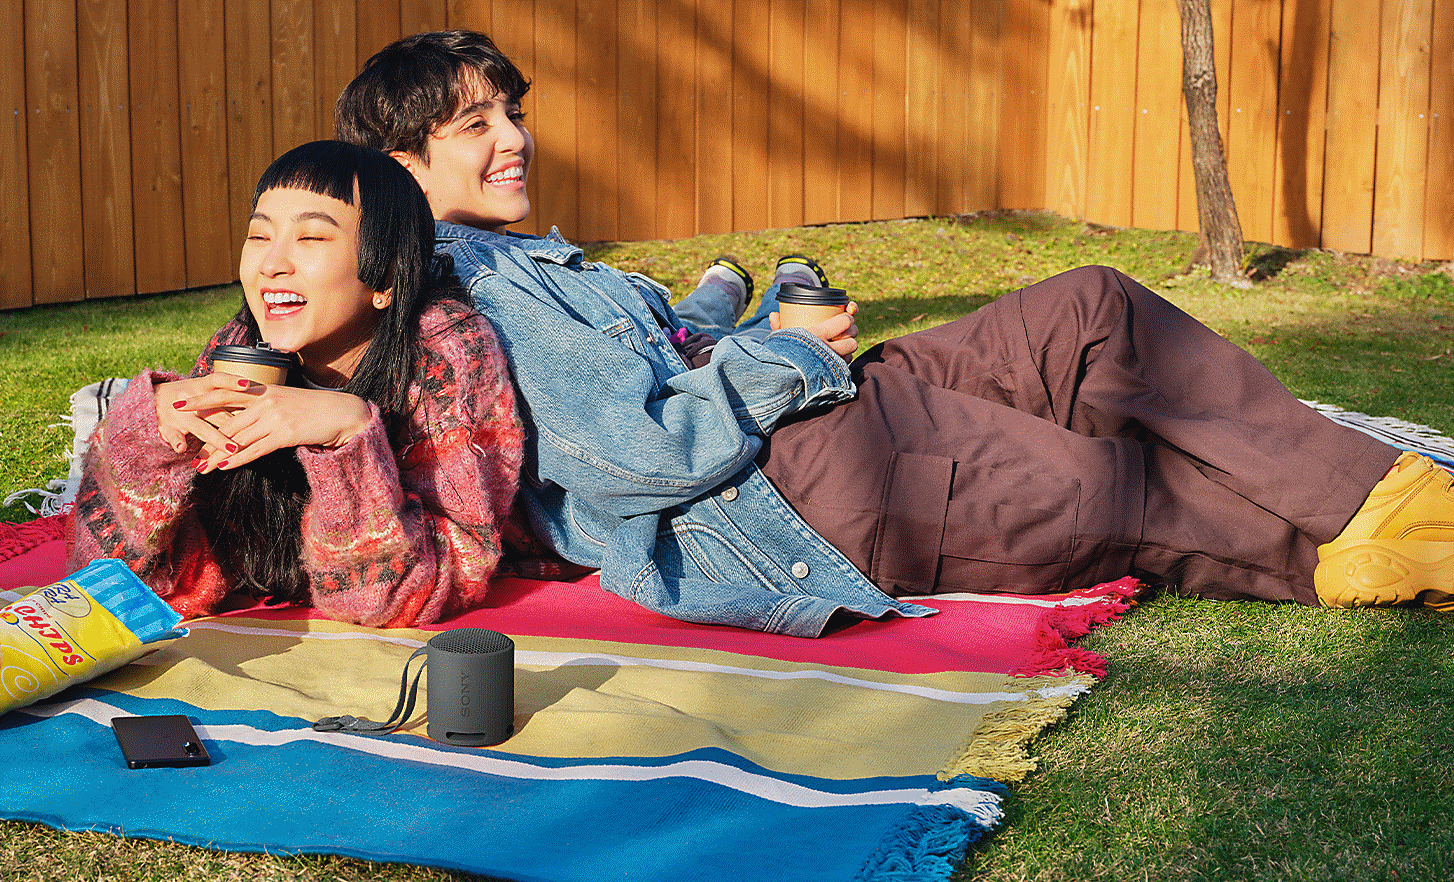 Abbildung von zwei Personen, die im Garten nebeneinander auf einer Picknickdecke liegen, mit einem schwarzen SRS-XB100 Lautsprecher daneben